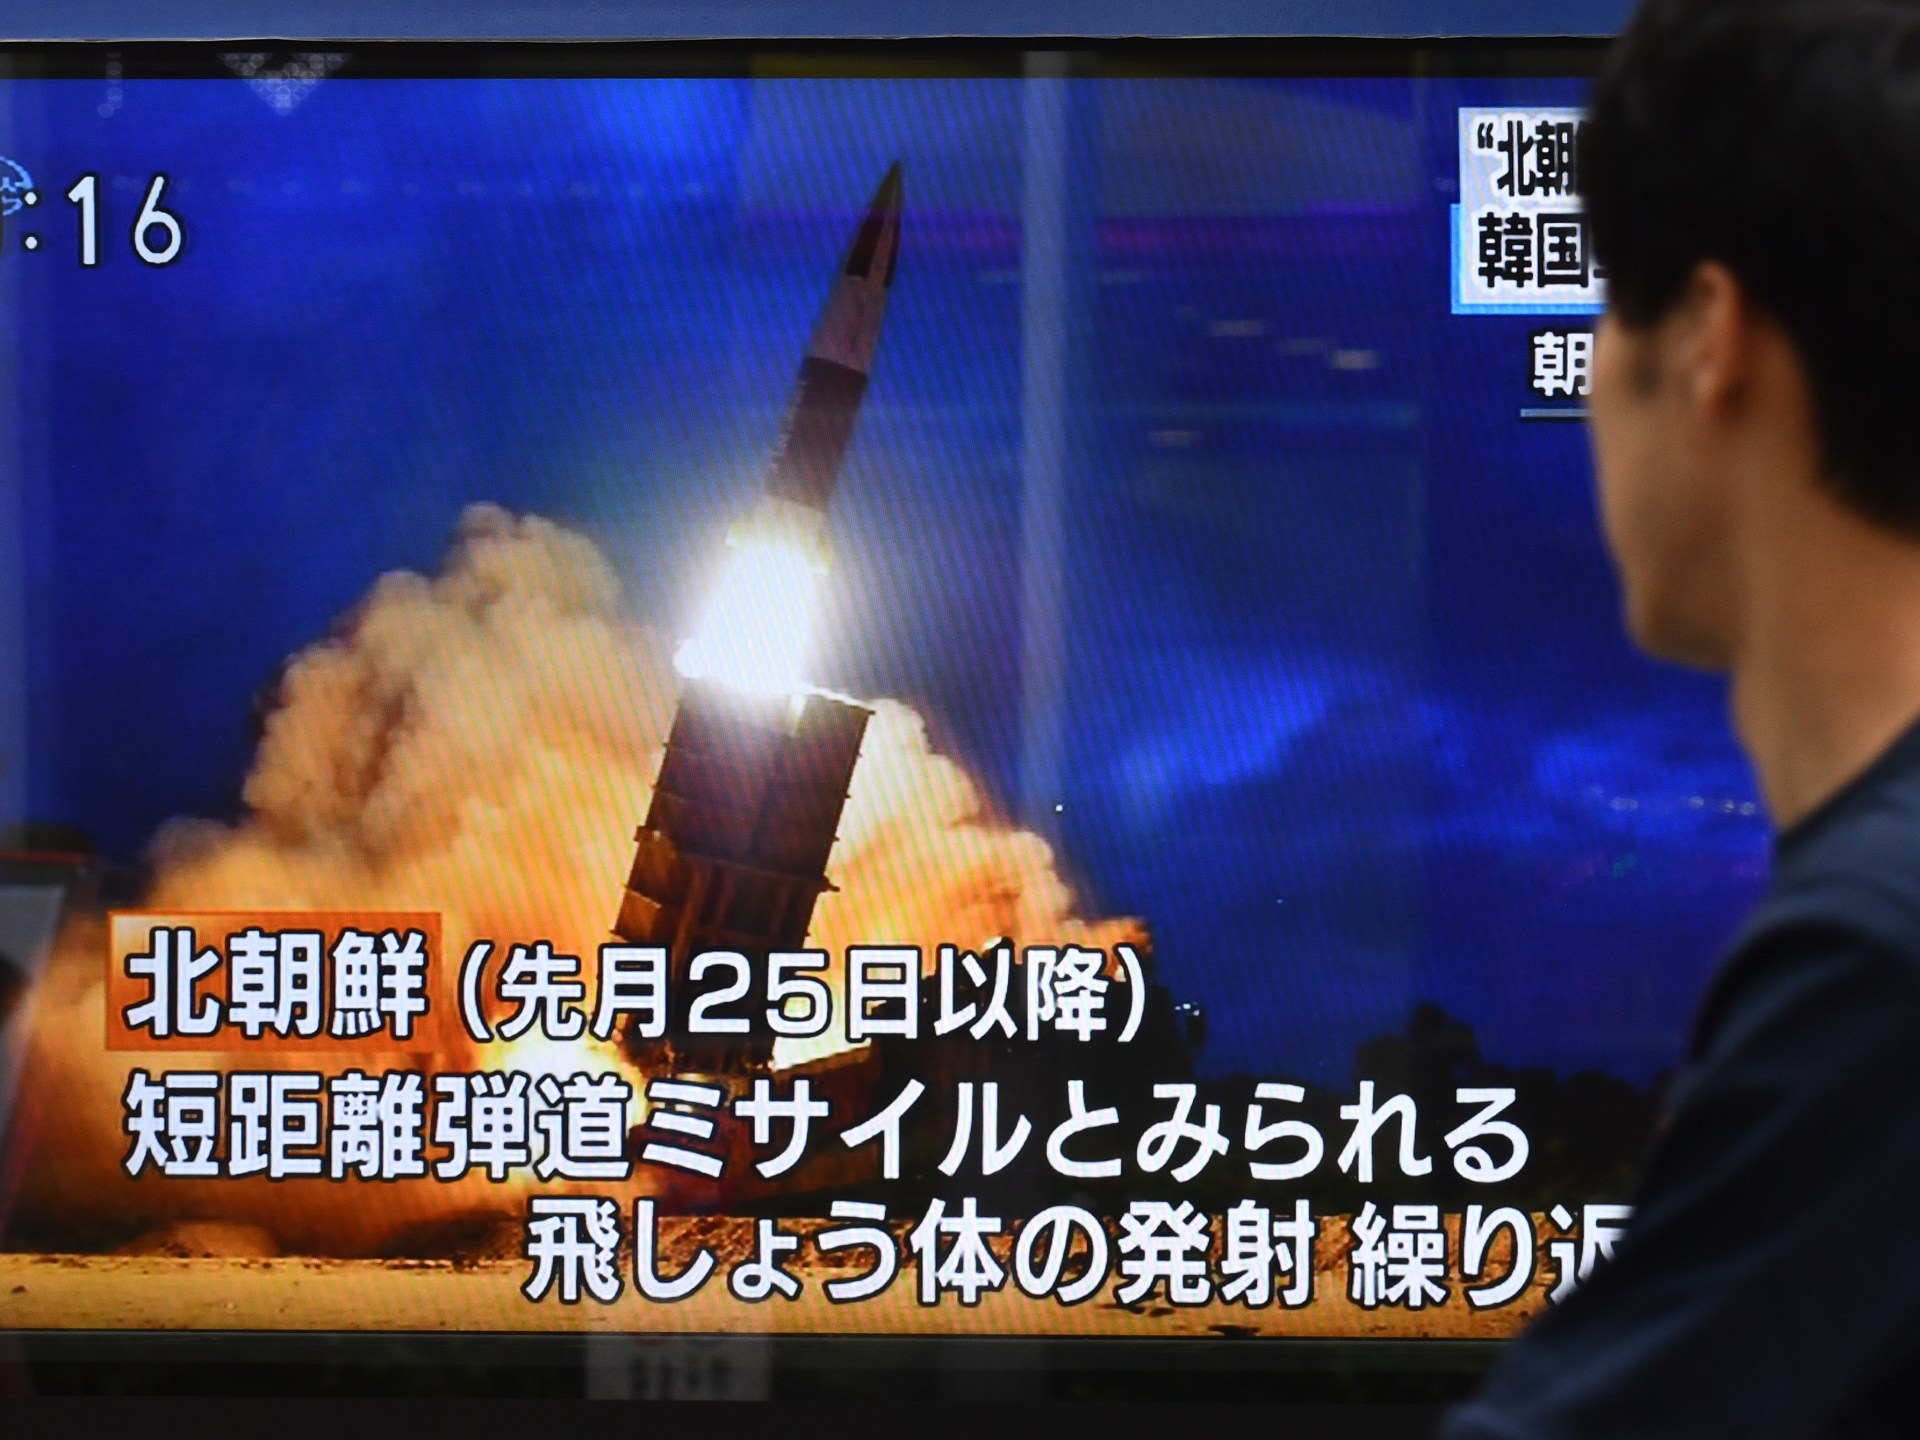 Korea Utara meluncurkan rudal setelah peringatan atas latihan militer |  Berita